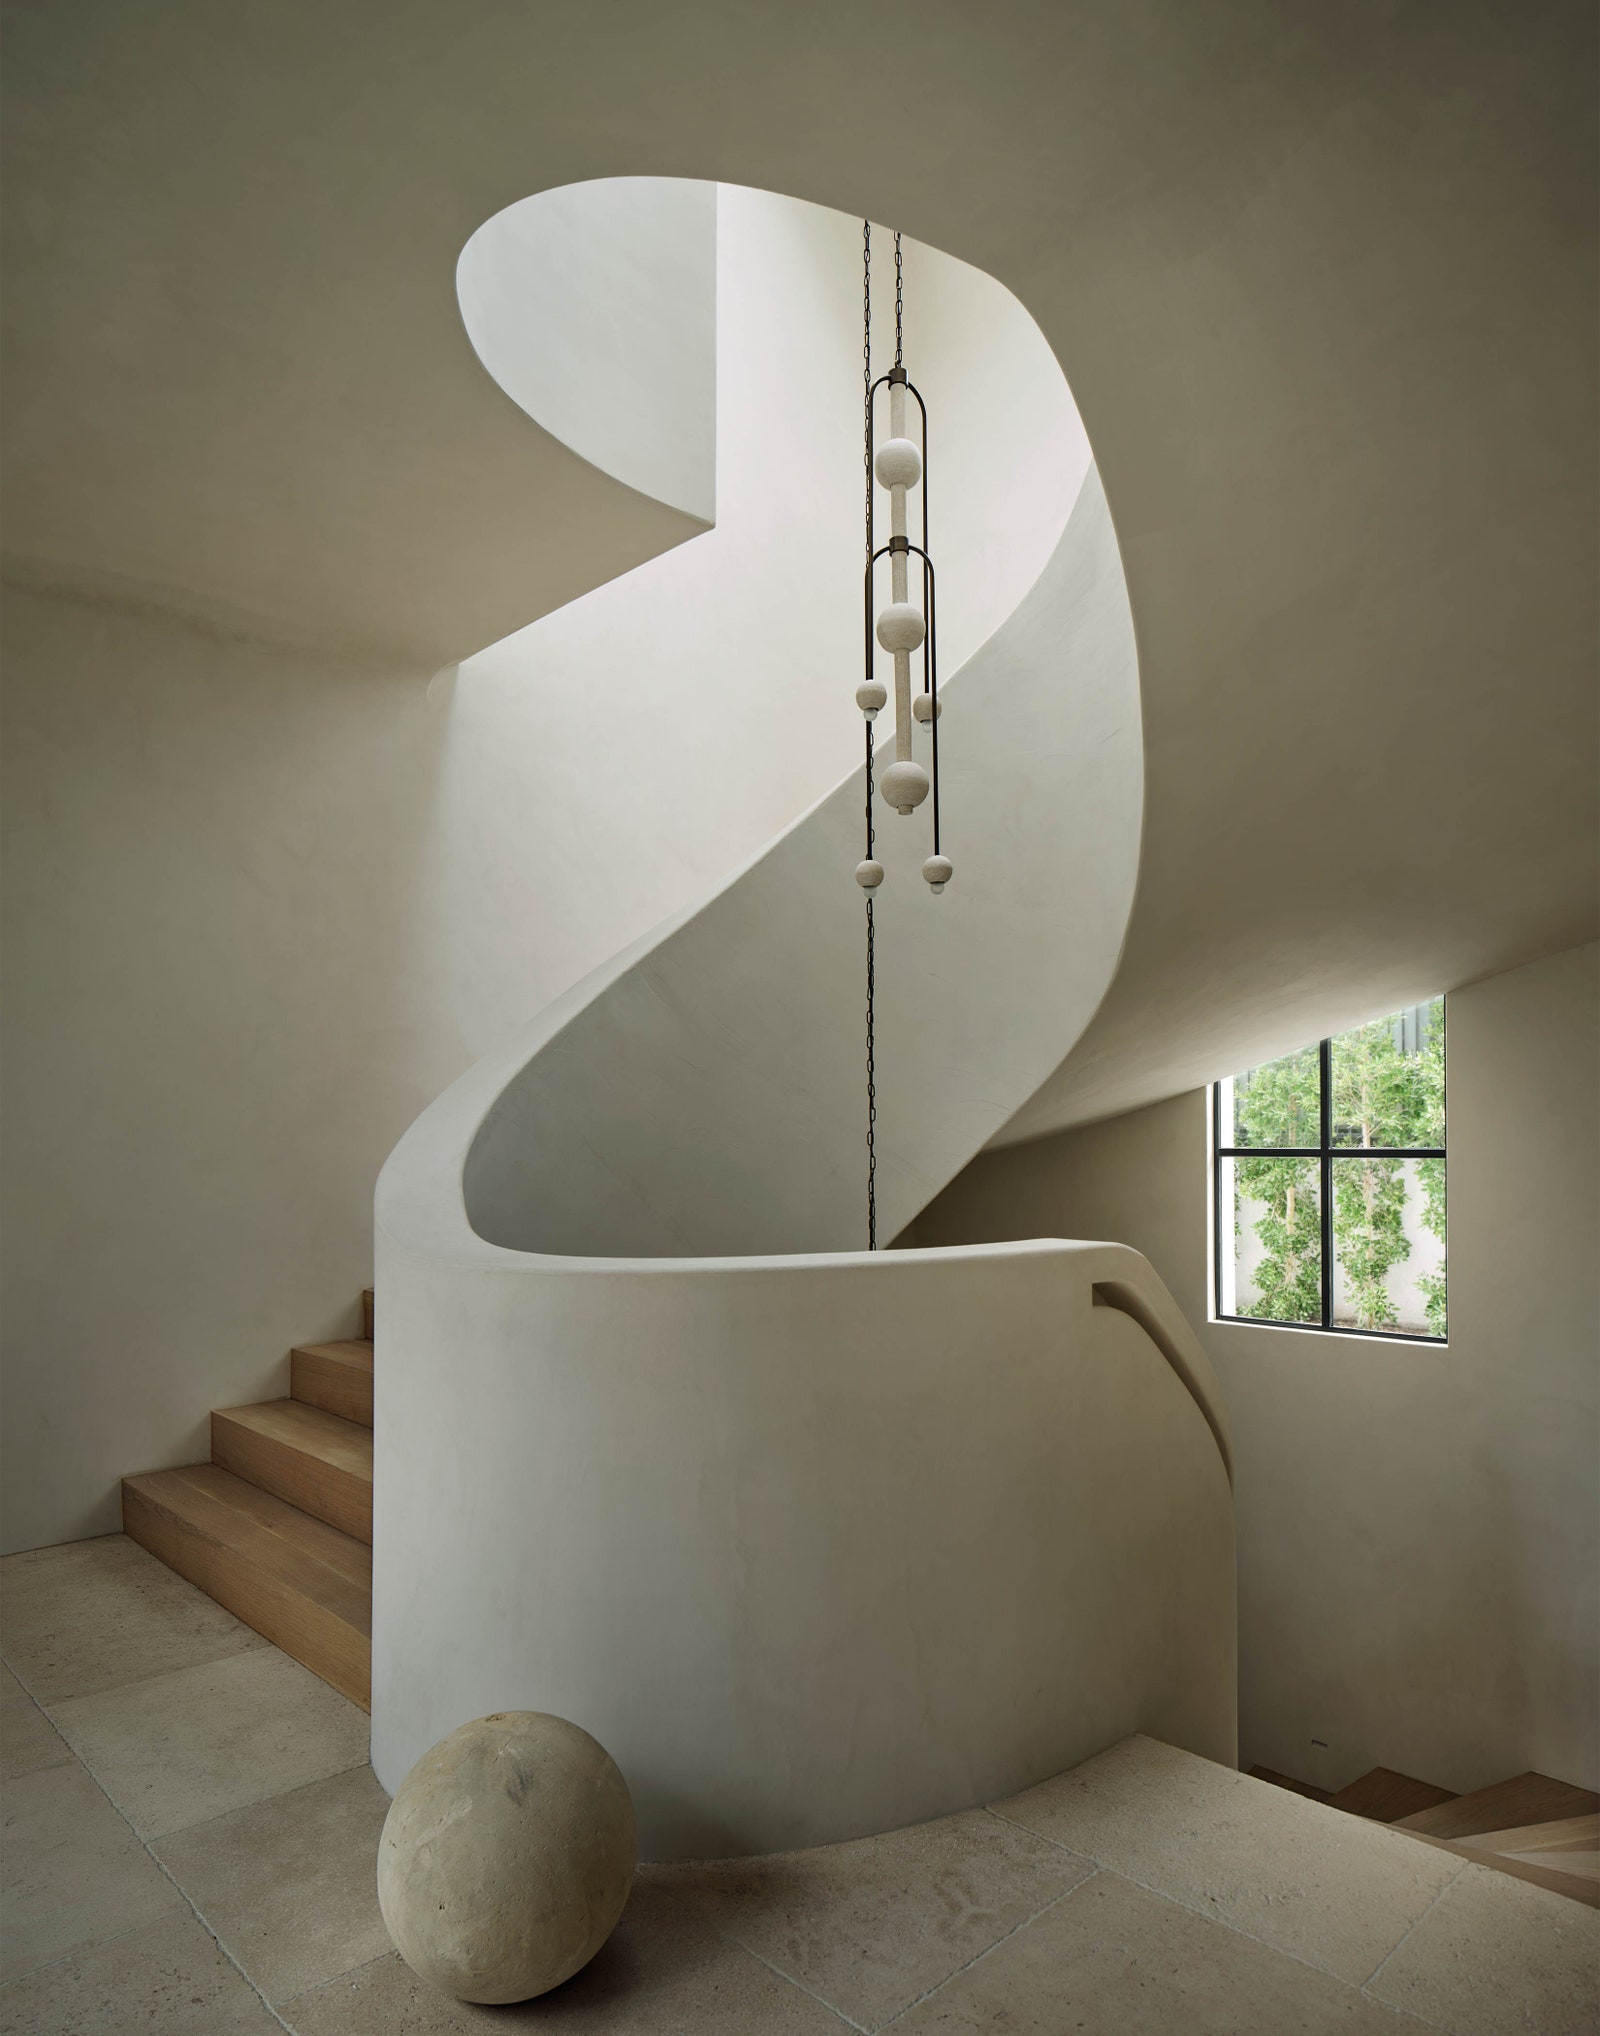 Staircase spirals around a chandelier